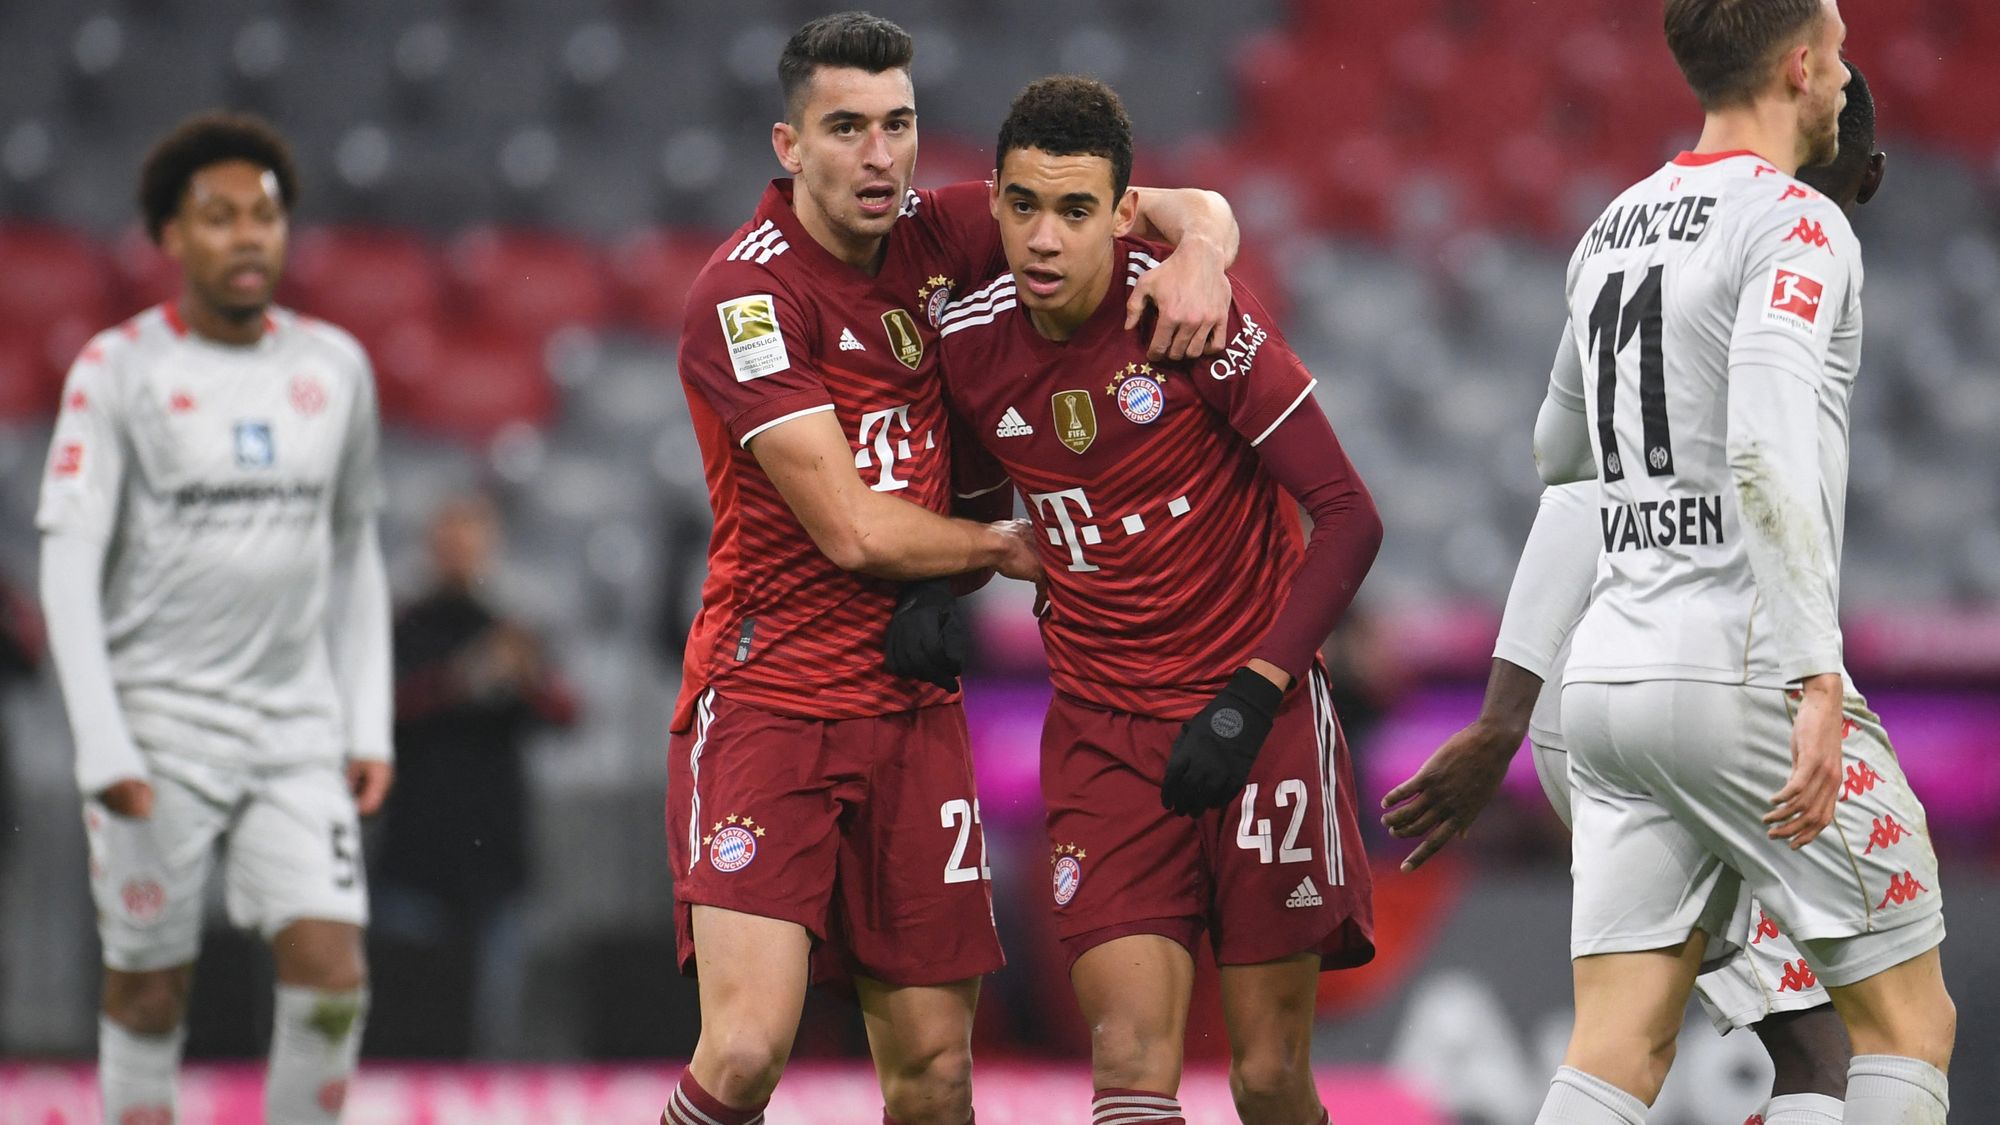 Bayern Munich remontó a Mainz y agrandó la ventaja en la Bundesliga